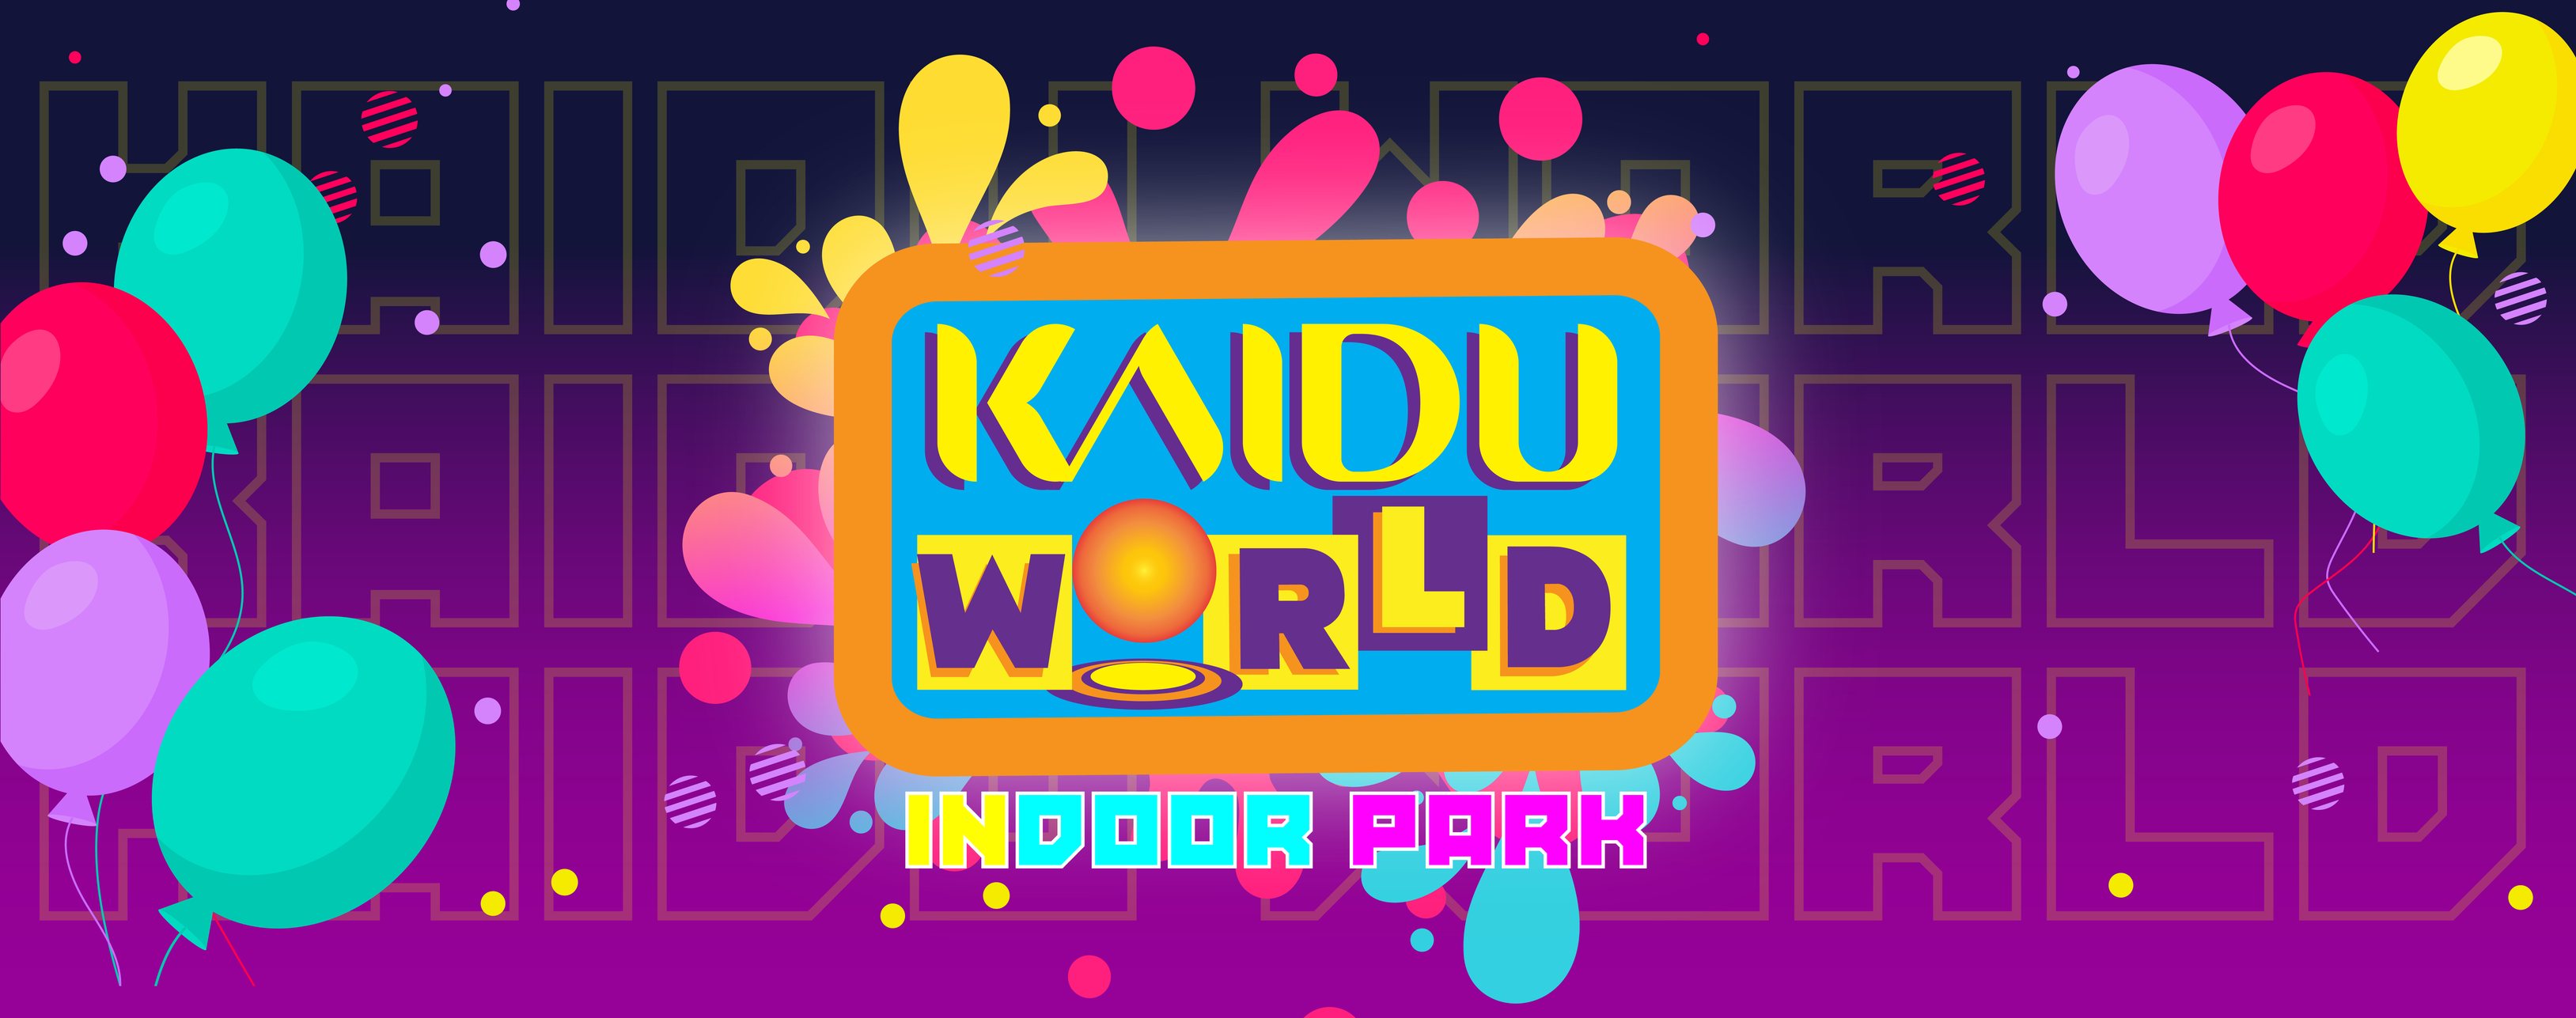 KaiduWorld